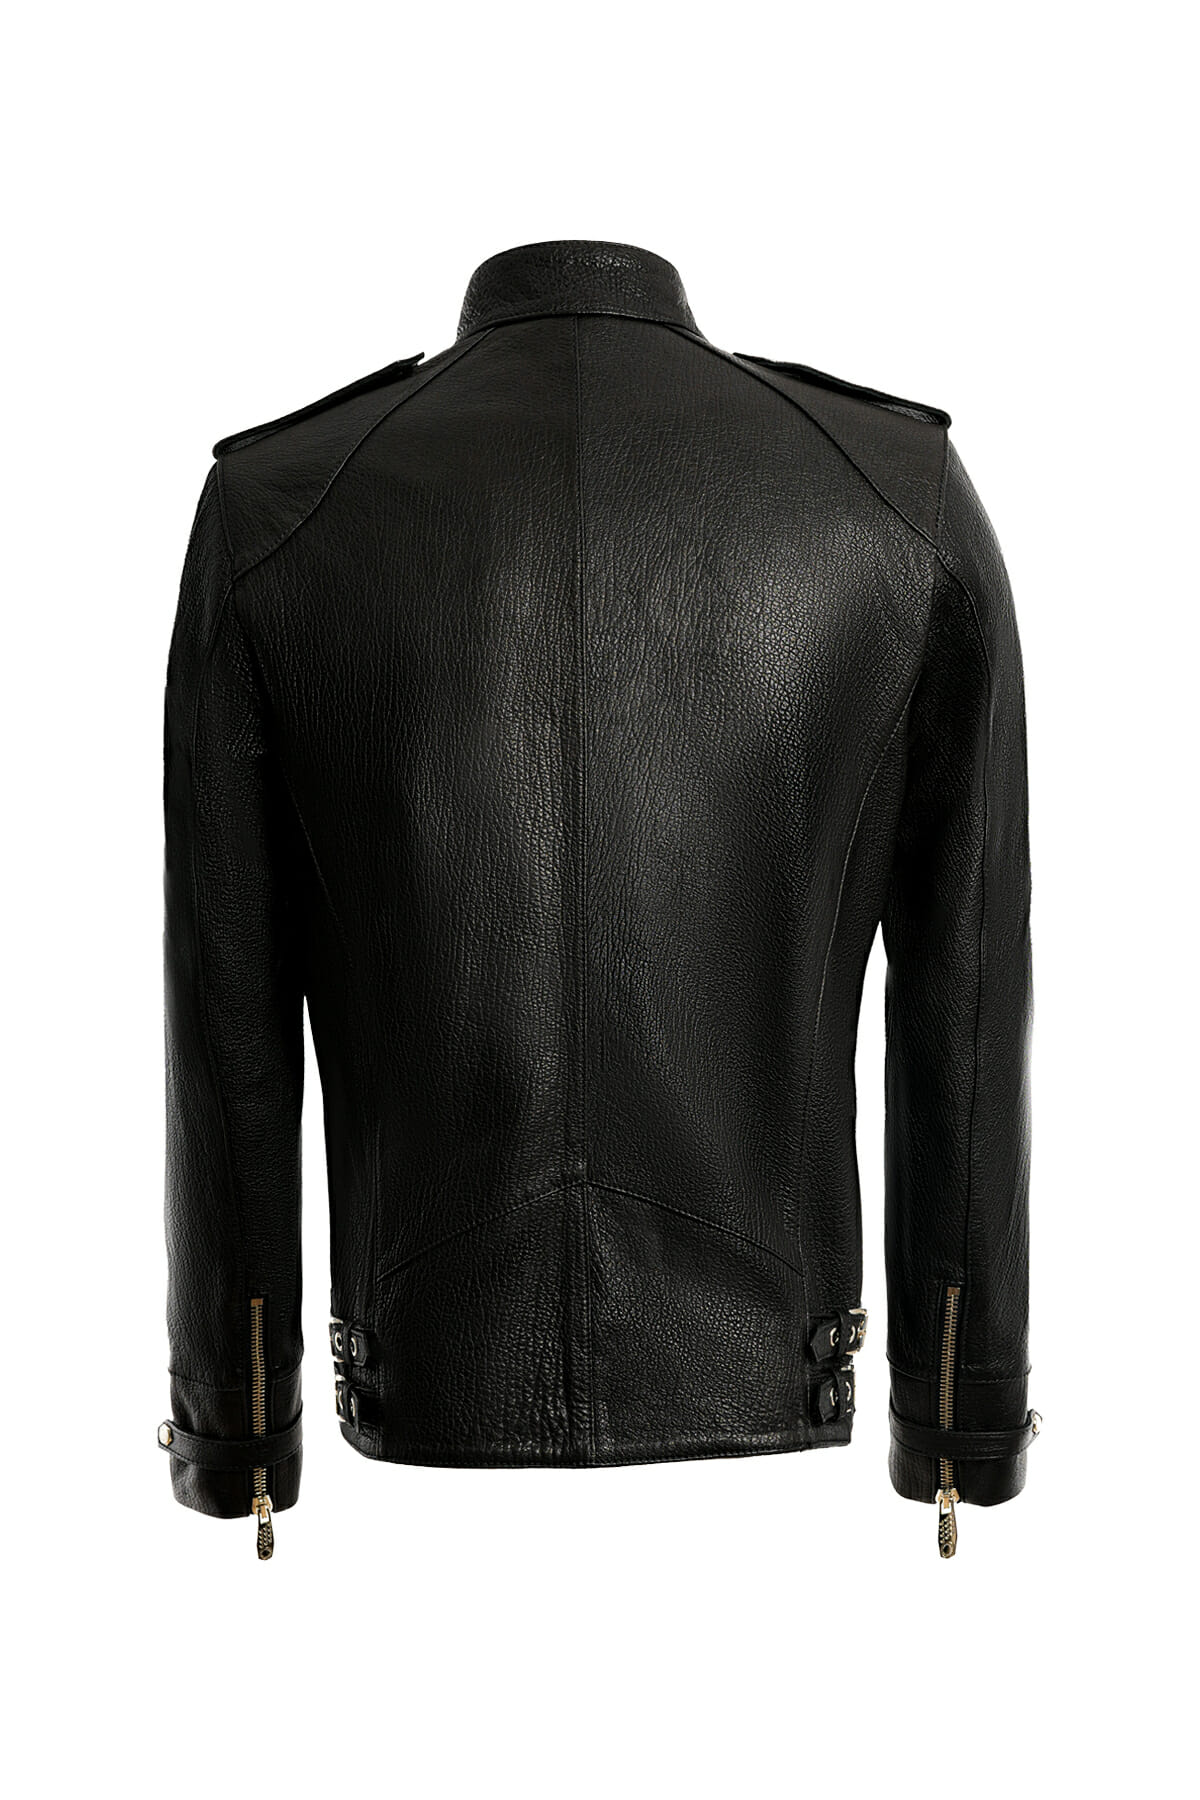 Safari Leather Jacket - Vavskins